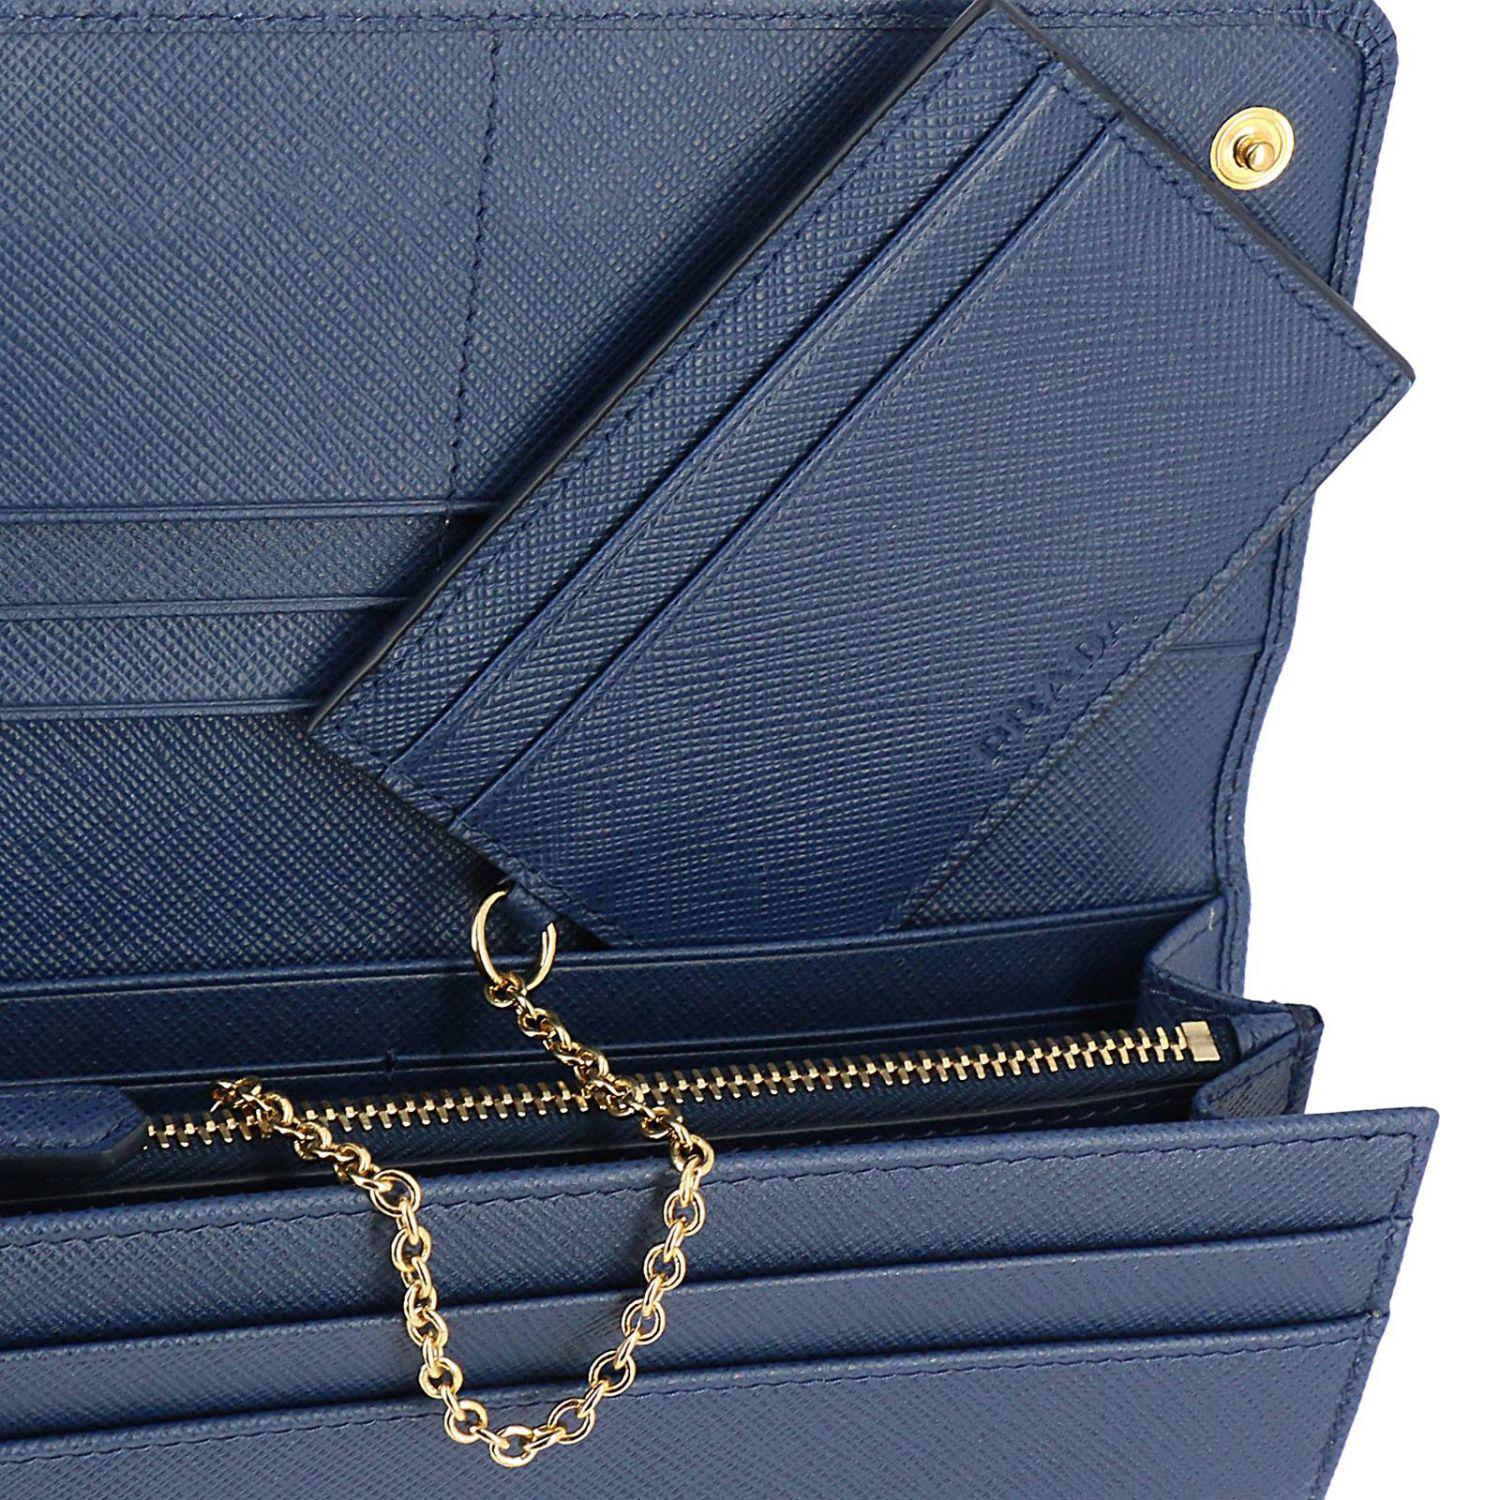 Prada Leather Wallet Women in Blue - Lyst